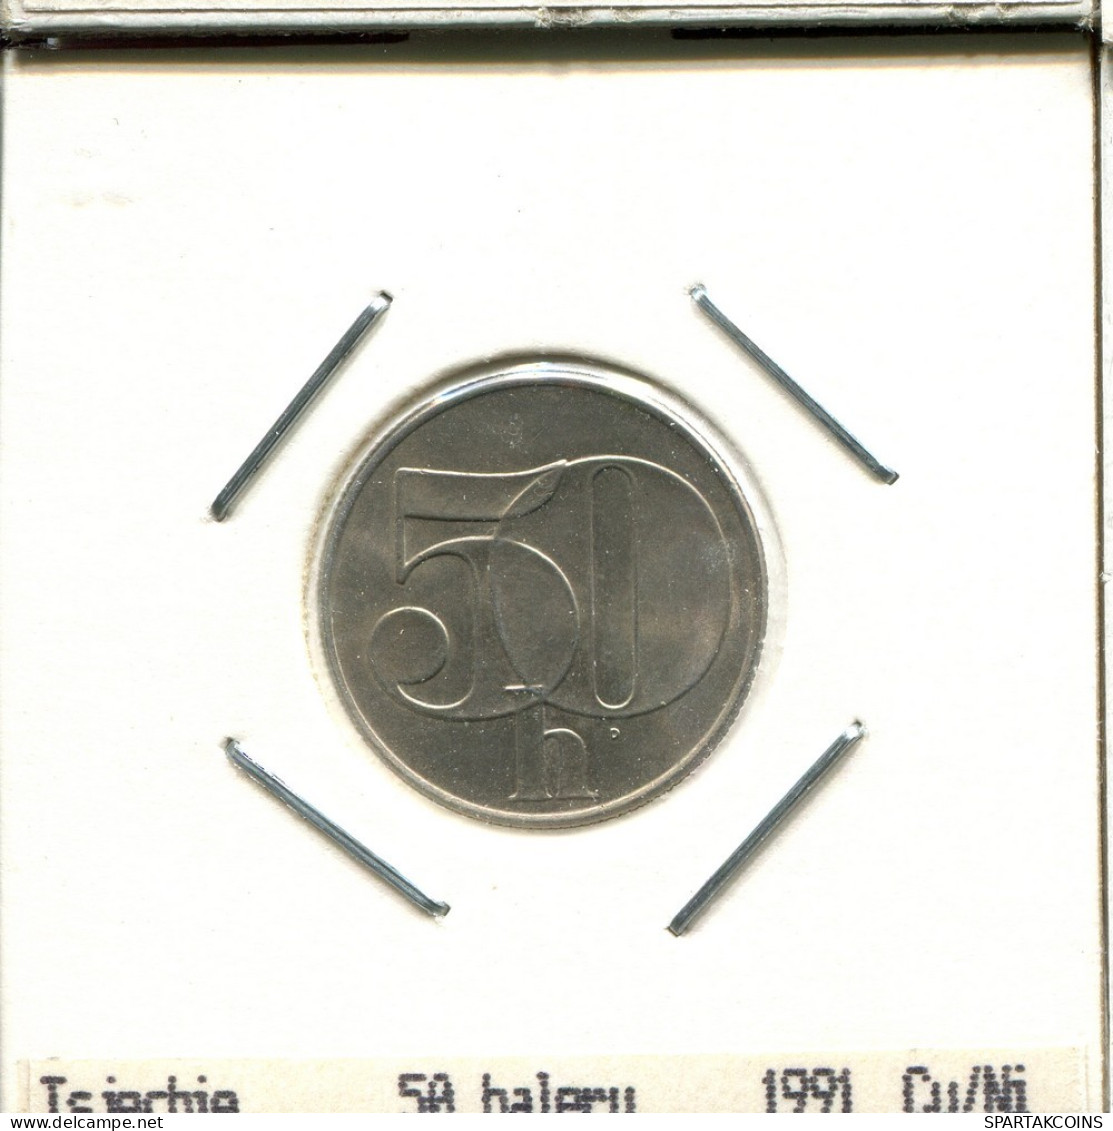 50 HALERU 1991 TSCHECHOSLOWAKEI CZECHOSLOWAKEI SLOVAKIA Münze #AS537.D.A - Cecoslovacchia